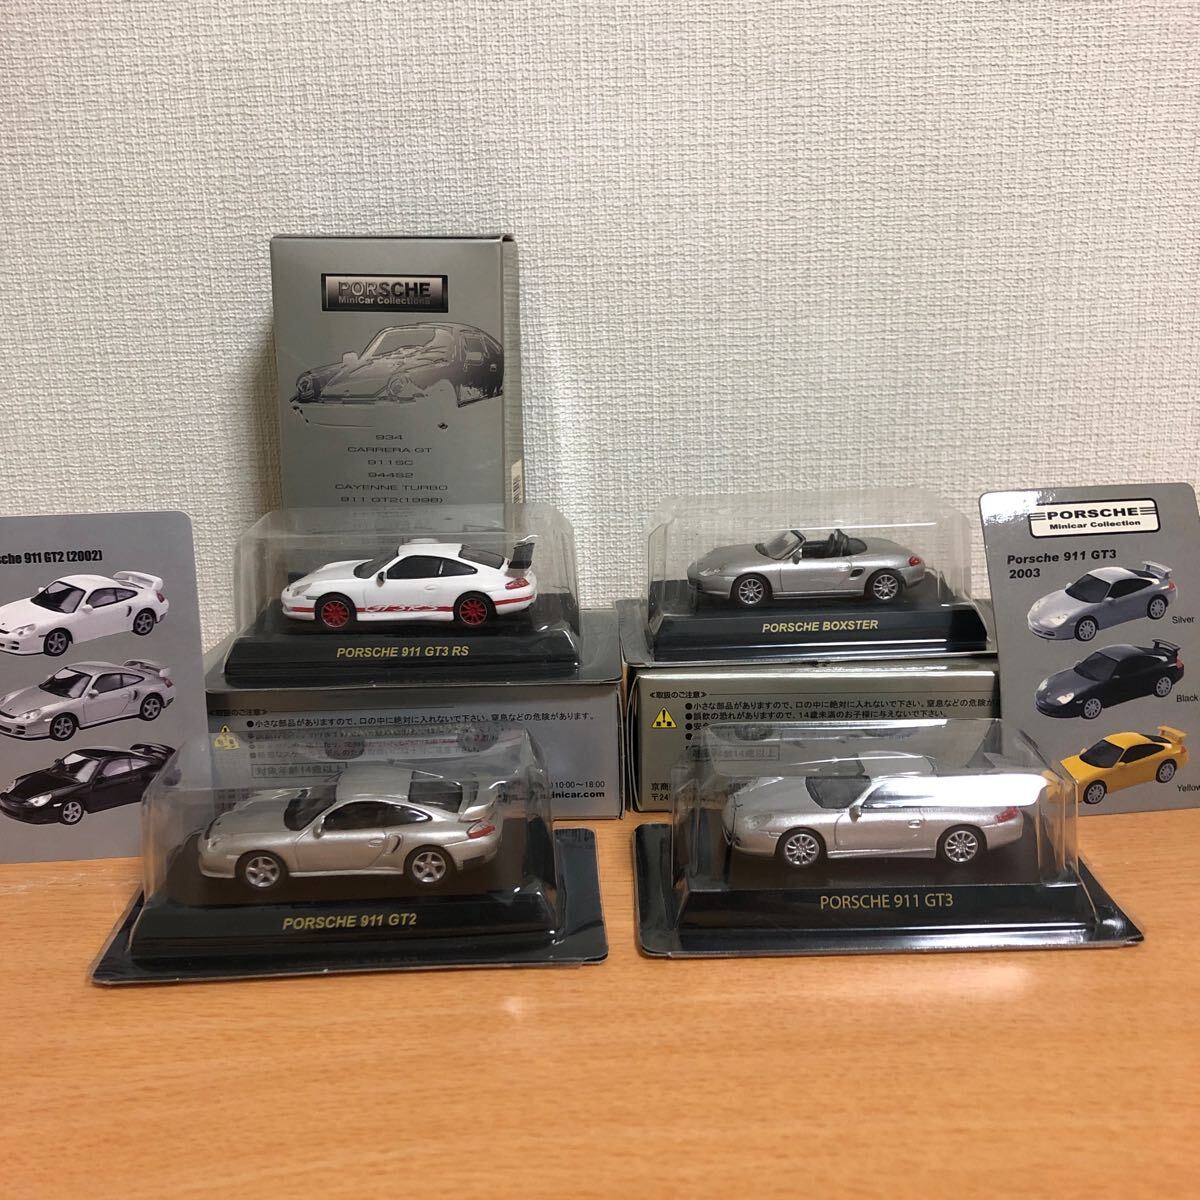 サークルKサンクス京商1/64ポルシェミニカーコレクション 911GT3RS、911GT3、911GT2、ボクスターの画像1